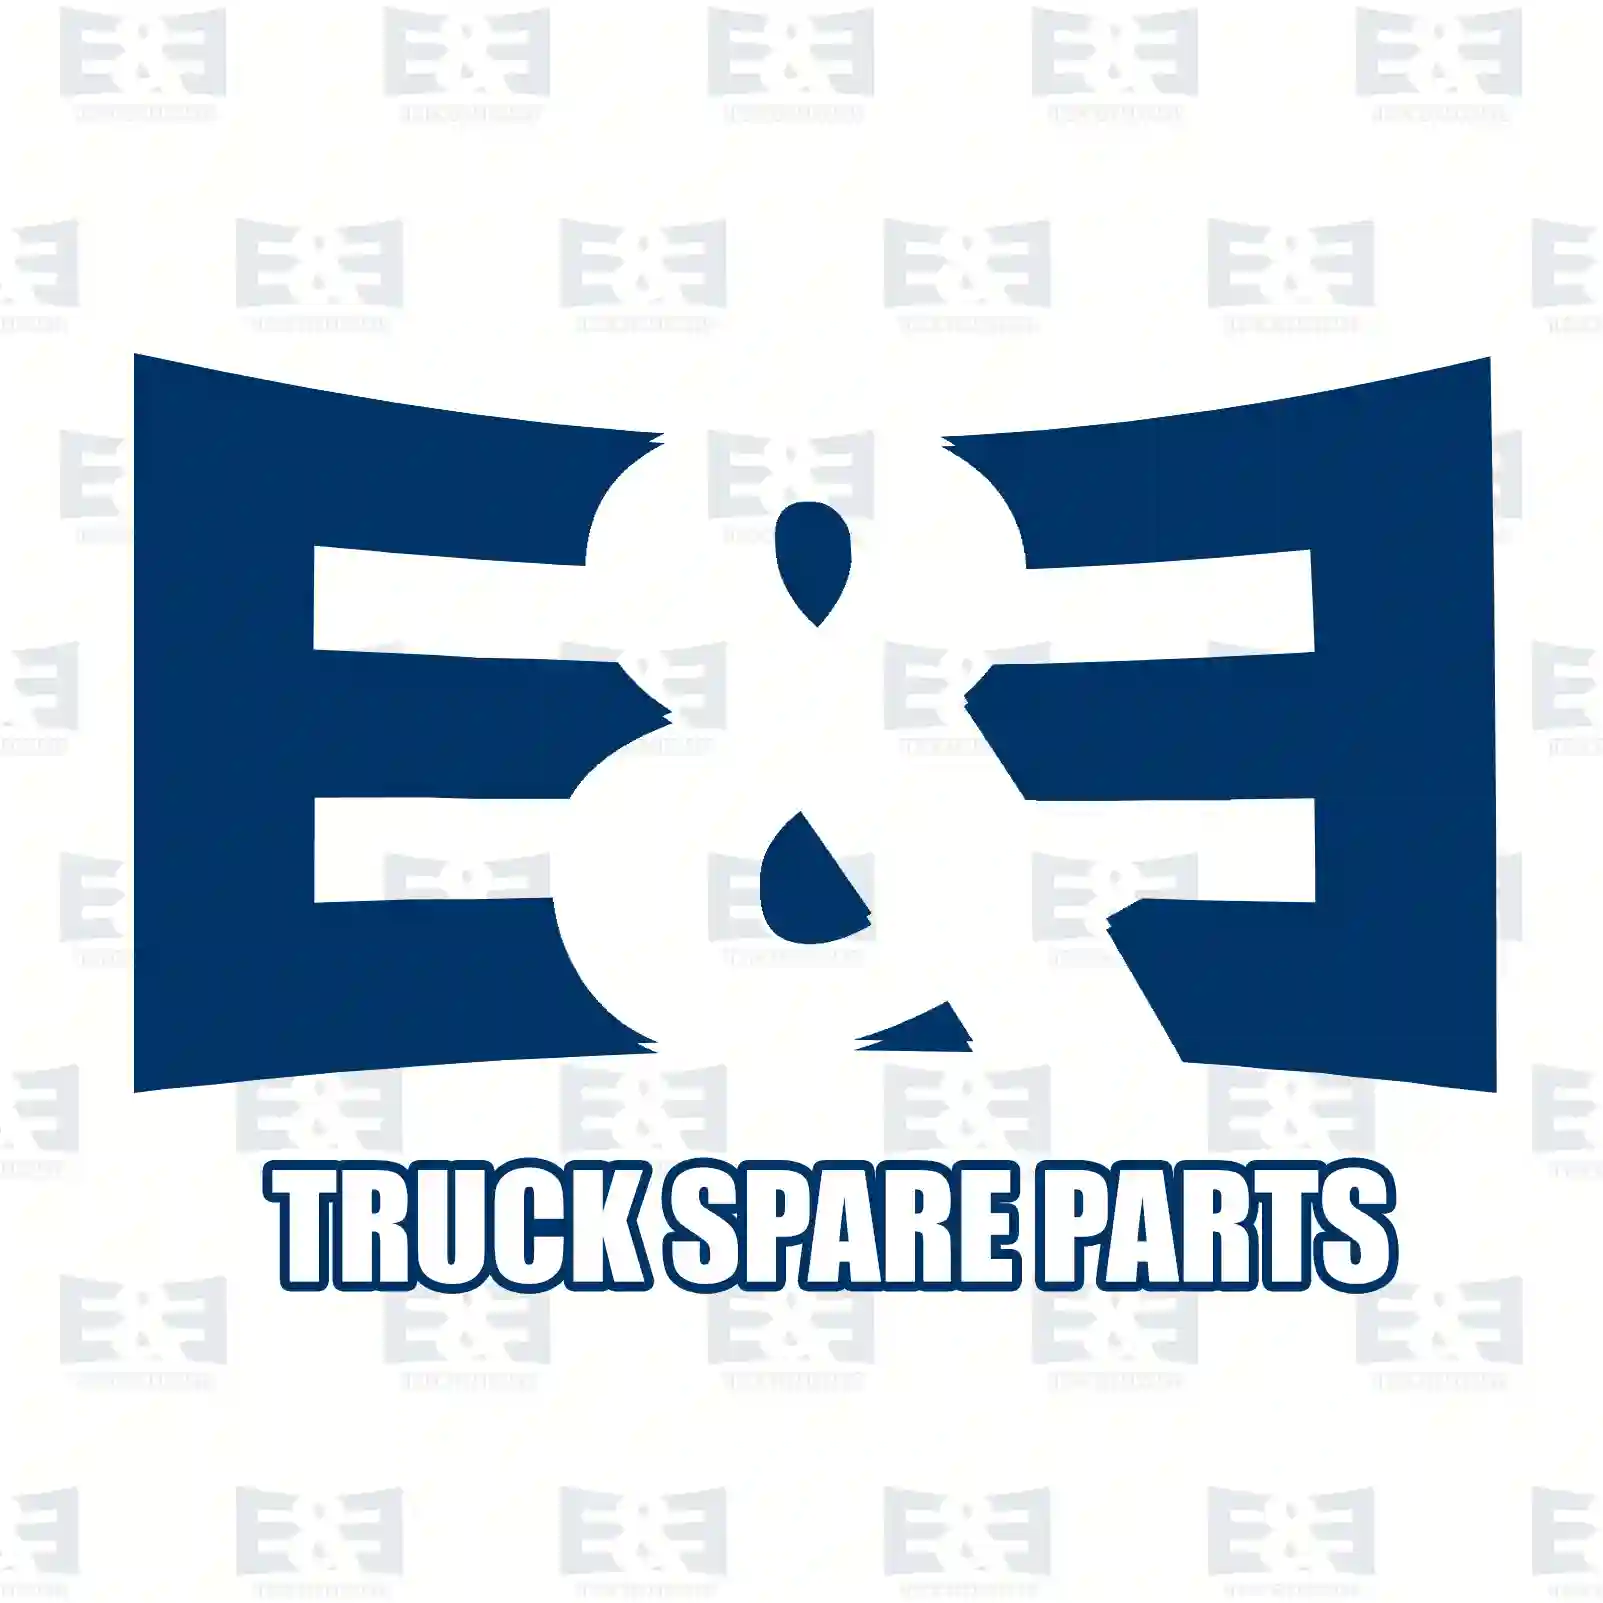 Gear shift knob, 2E2278579, 6202680042, ZG30533-0008 ||  2E2278579 E&E Truck Spare Parts | Truck Spare Parts, Auotomotive Spare Parts Gear shift knob, 2E2278579, 6202680042, ZG30533-0008 ||  2E2278579 E&E Truck Spare Parts | Truck Spare Parts, Auotomotive Spare Parts